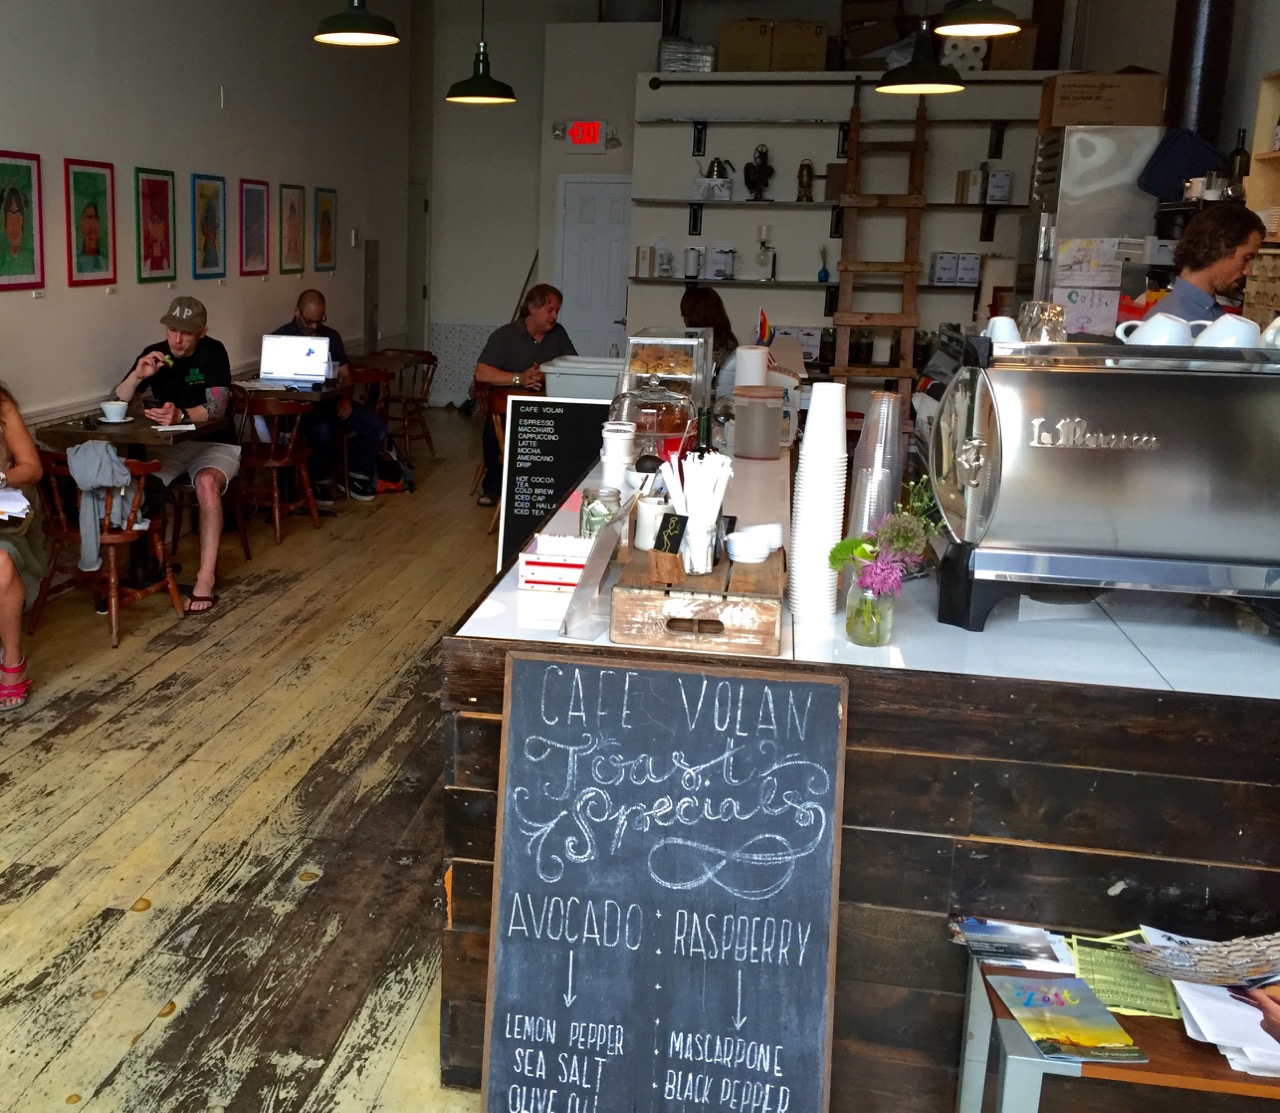 Café Volan. A.P. Paul Goldfinger photo. July 15, 2015.